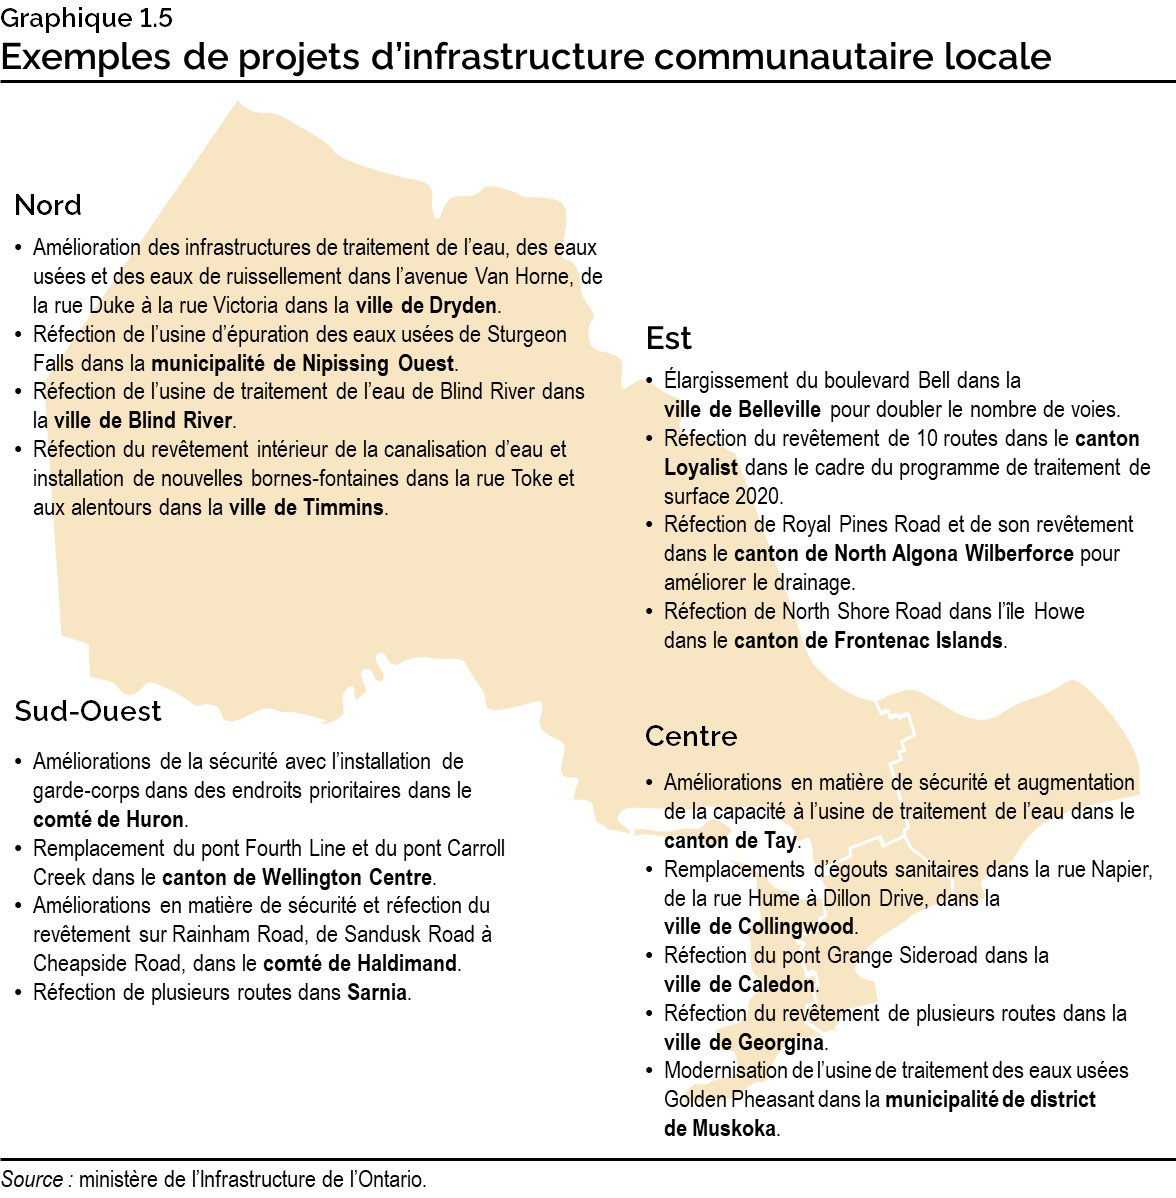 Graphique 1.5 : Exemples de projets d’infrastructure communautaire locale